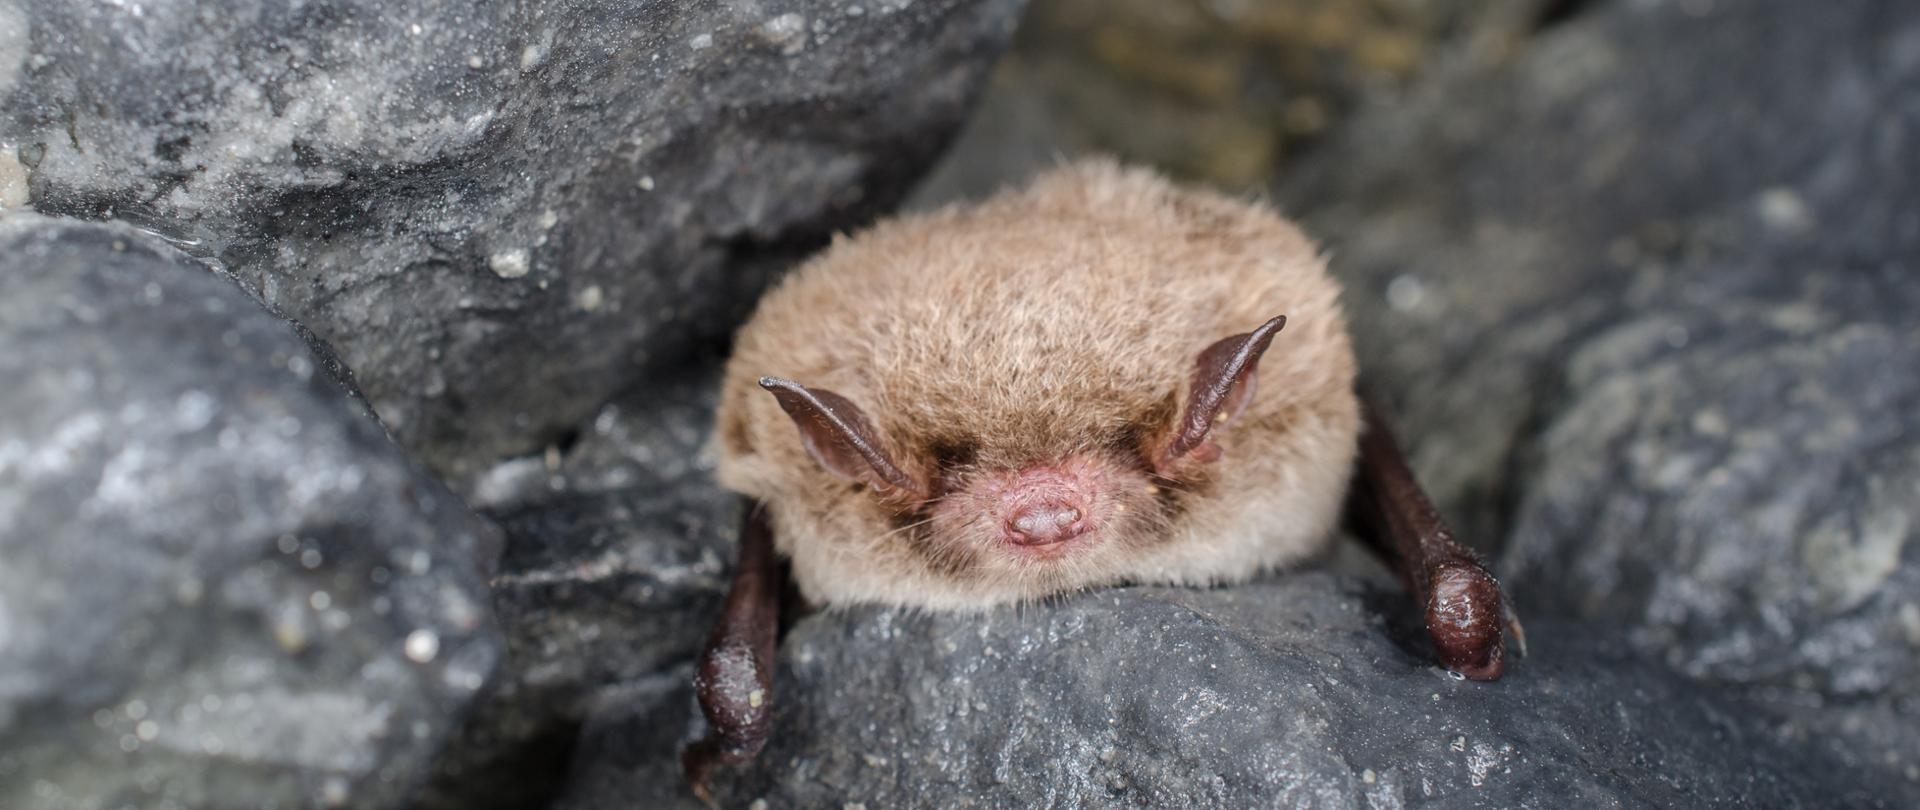 Daubenton's bat or Daubenton's myotis (Myotis daubentonii)